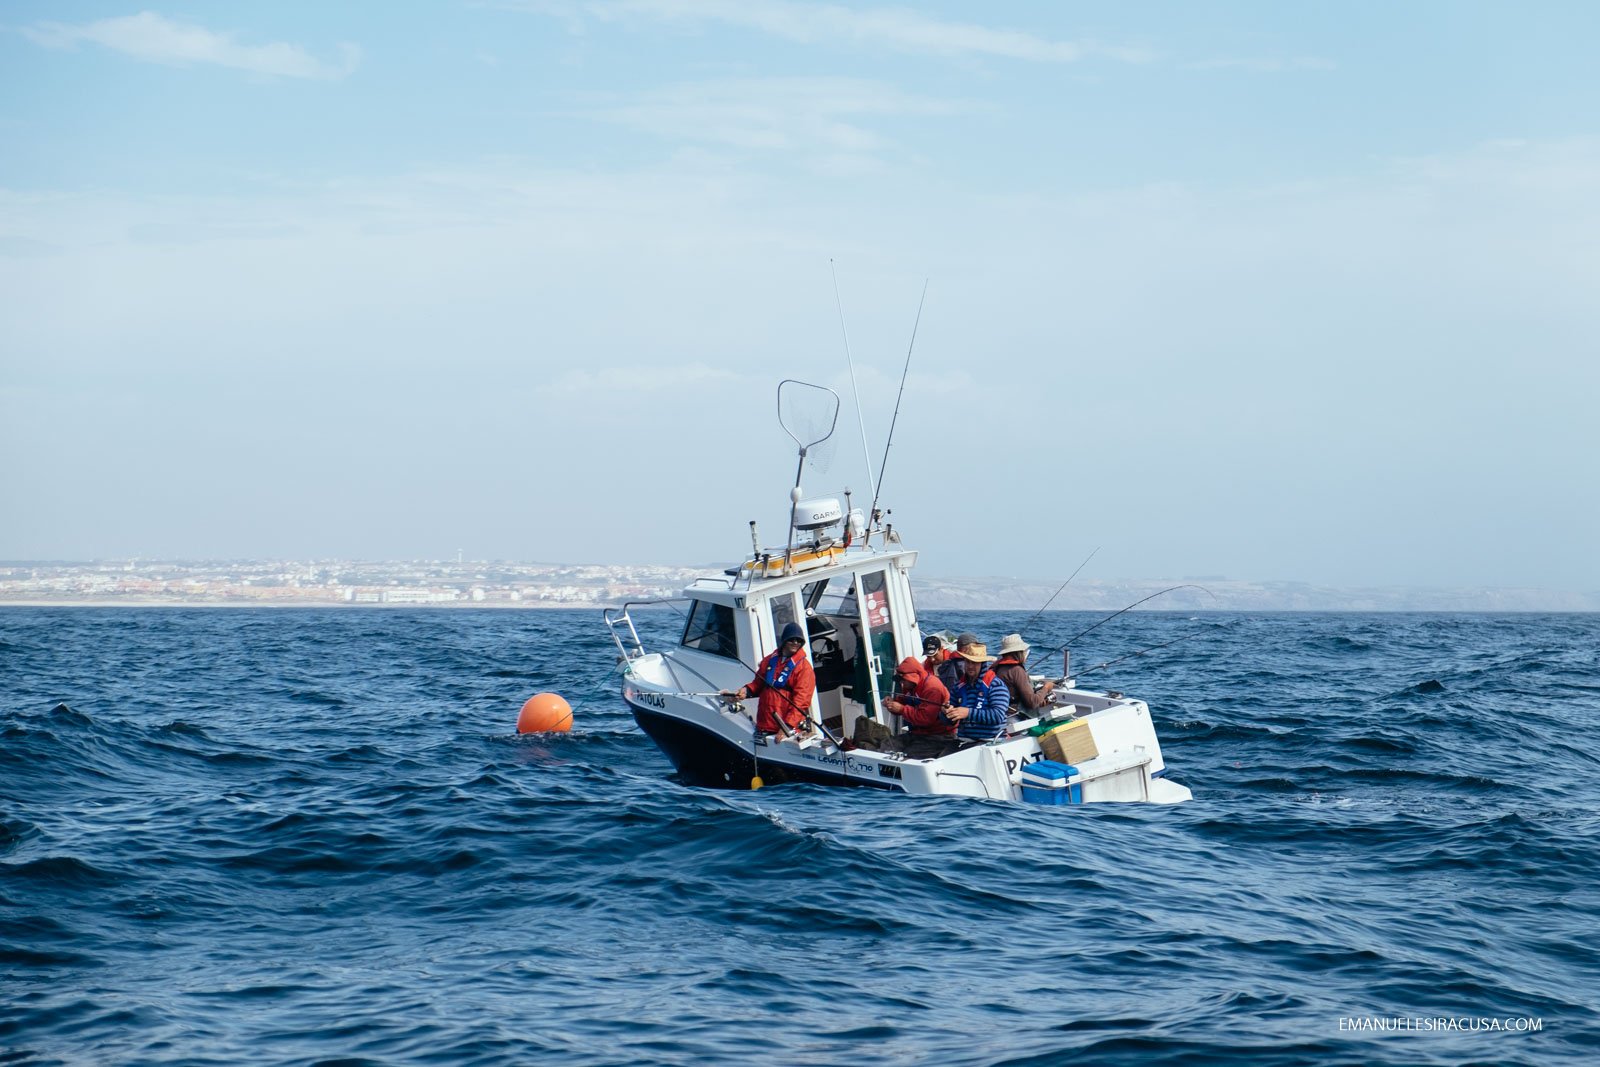 Emanuele Siracusa - Centro de Portugal - Oeste - Peniche Line Fishing-3